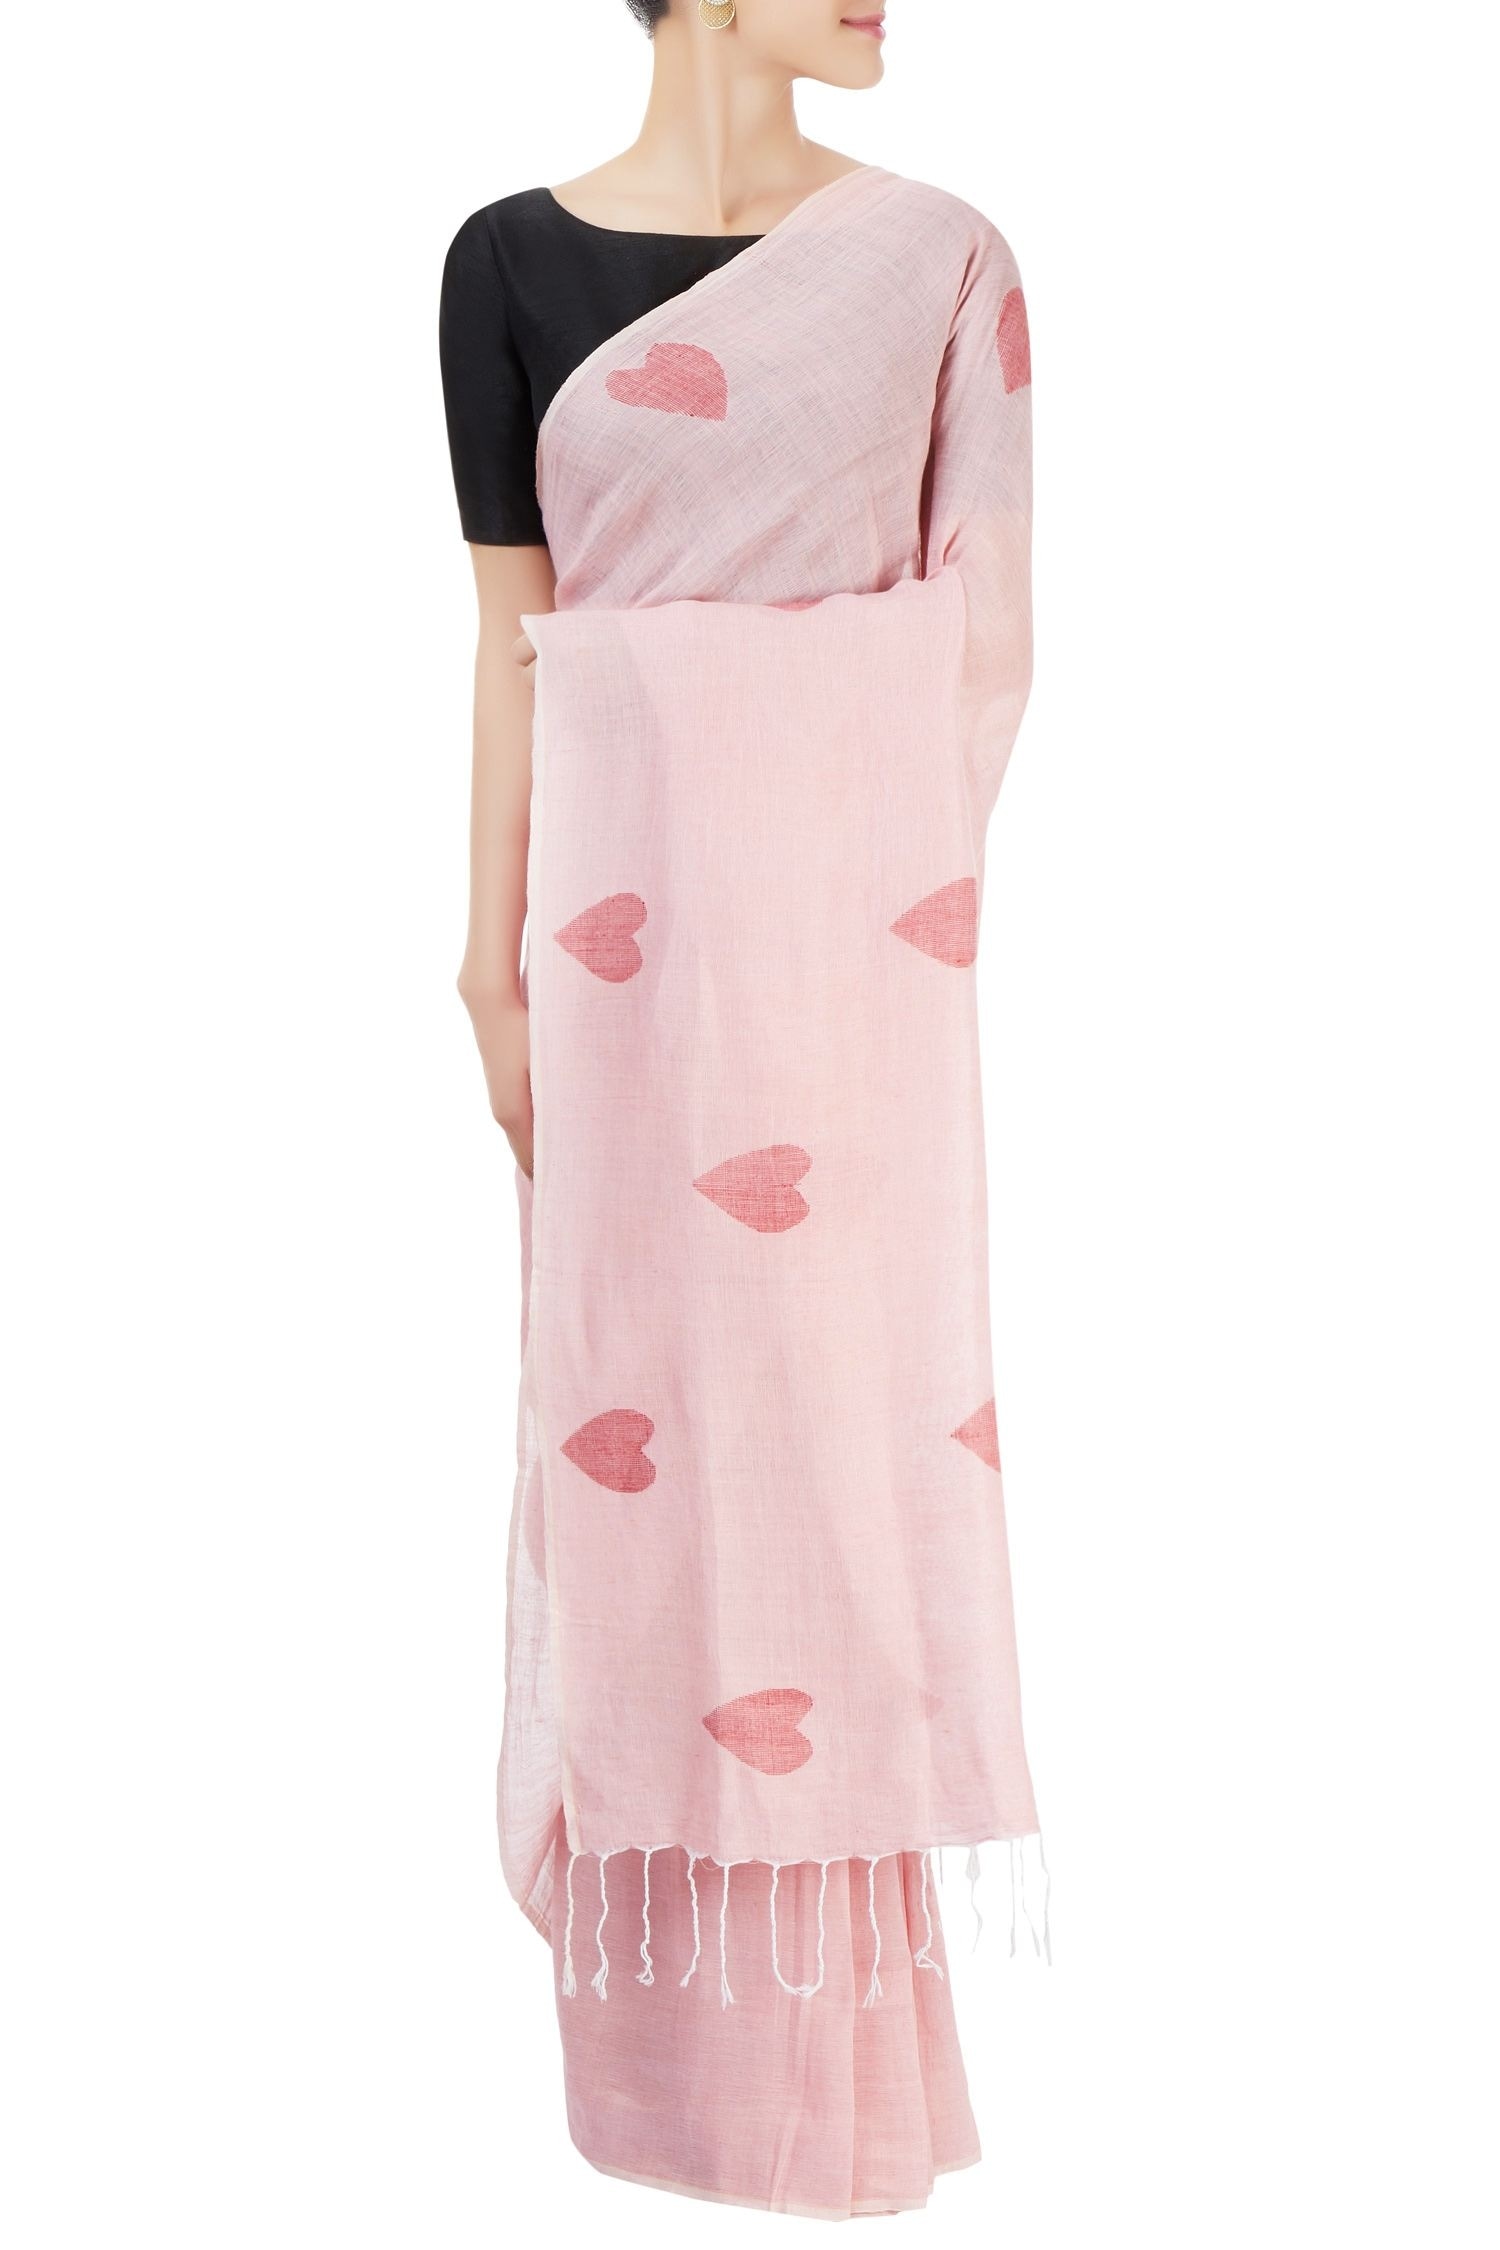 Galang Gabaan Pink Cotton Linen Printed Saree For Women